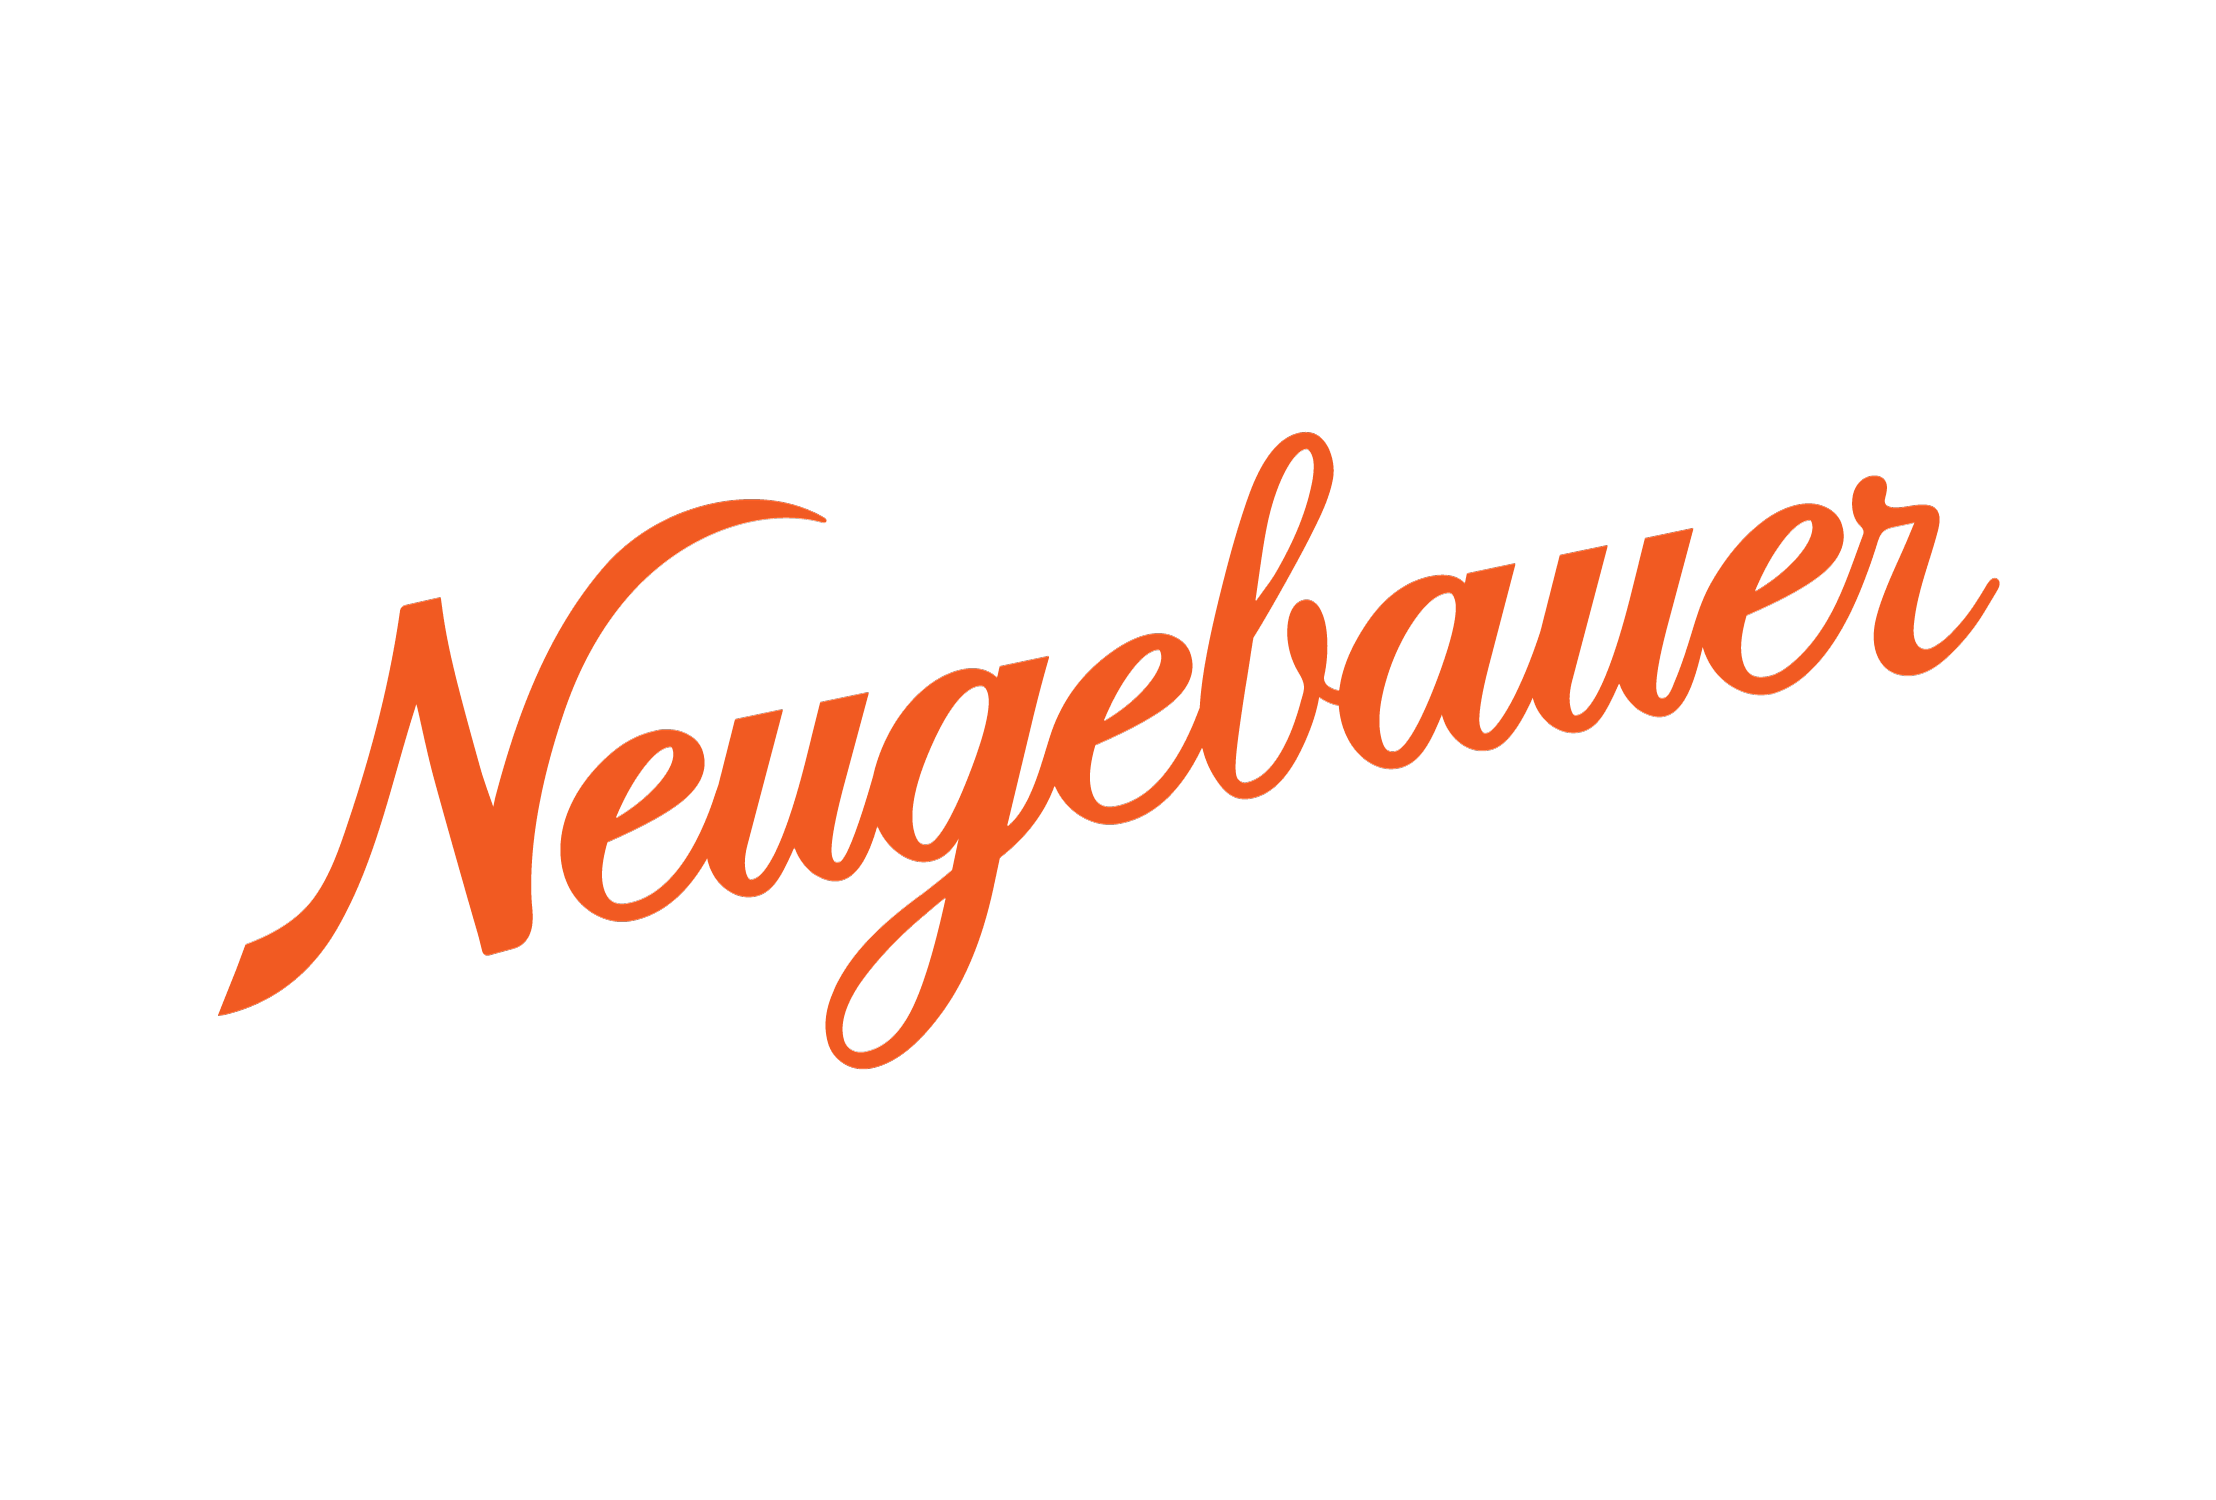 Neugebauer Chocolates